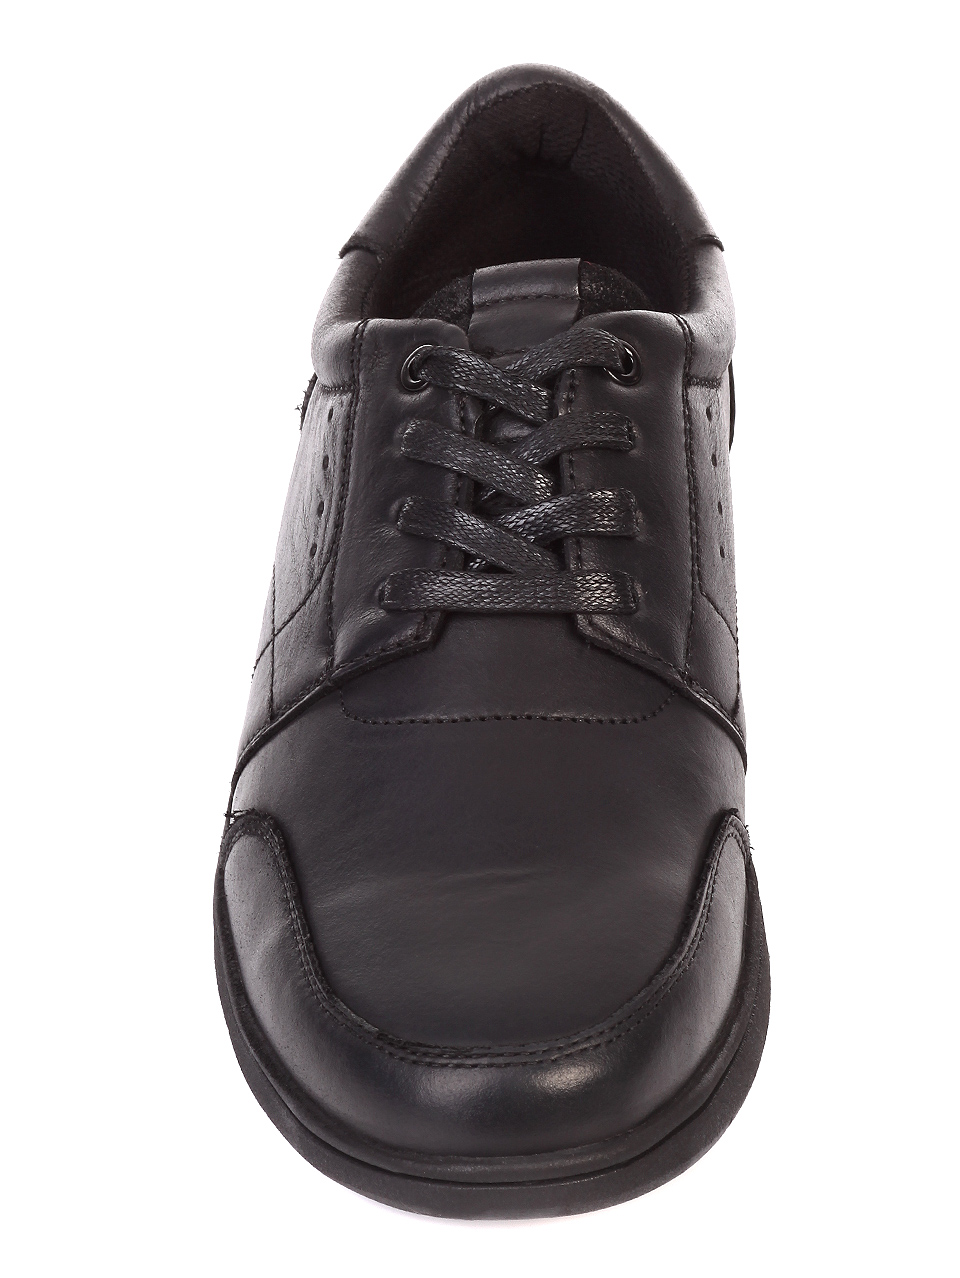 Ежедневни мъжки обувки от естествена кожа 7N-19775 black